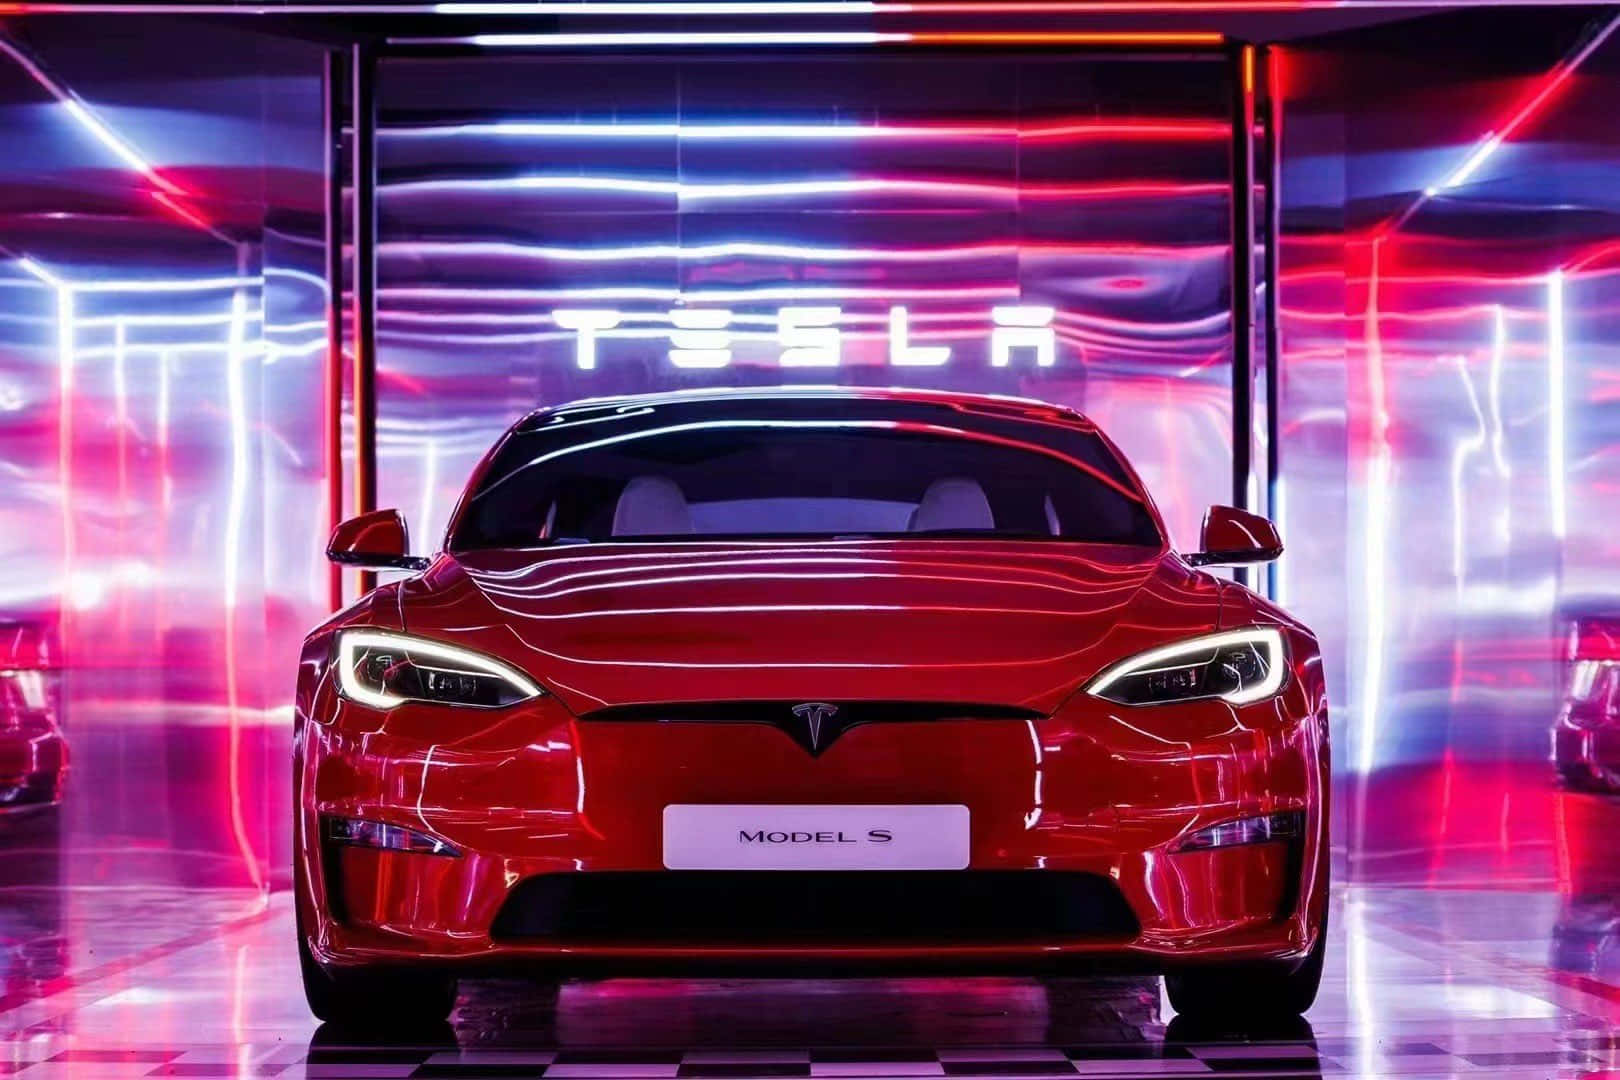 Tesla'smodel 3: En Innovativ Revolutionerende Bil Til Den Moderne Æra.